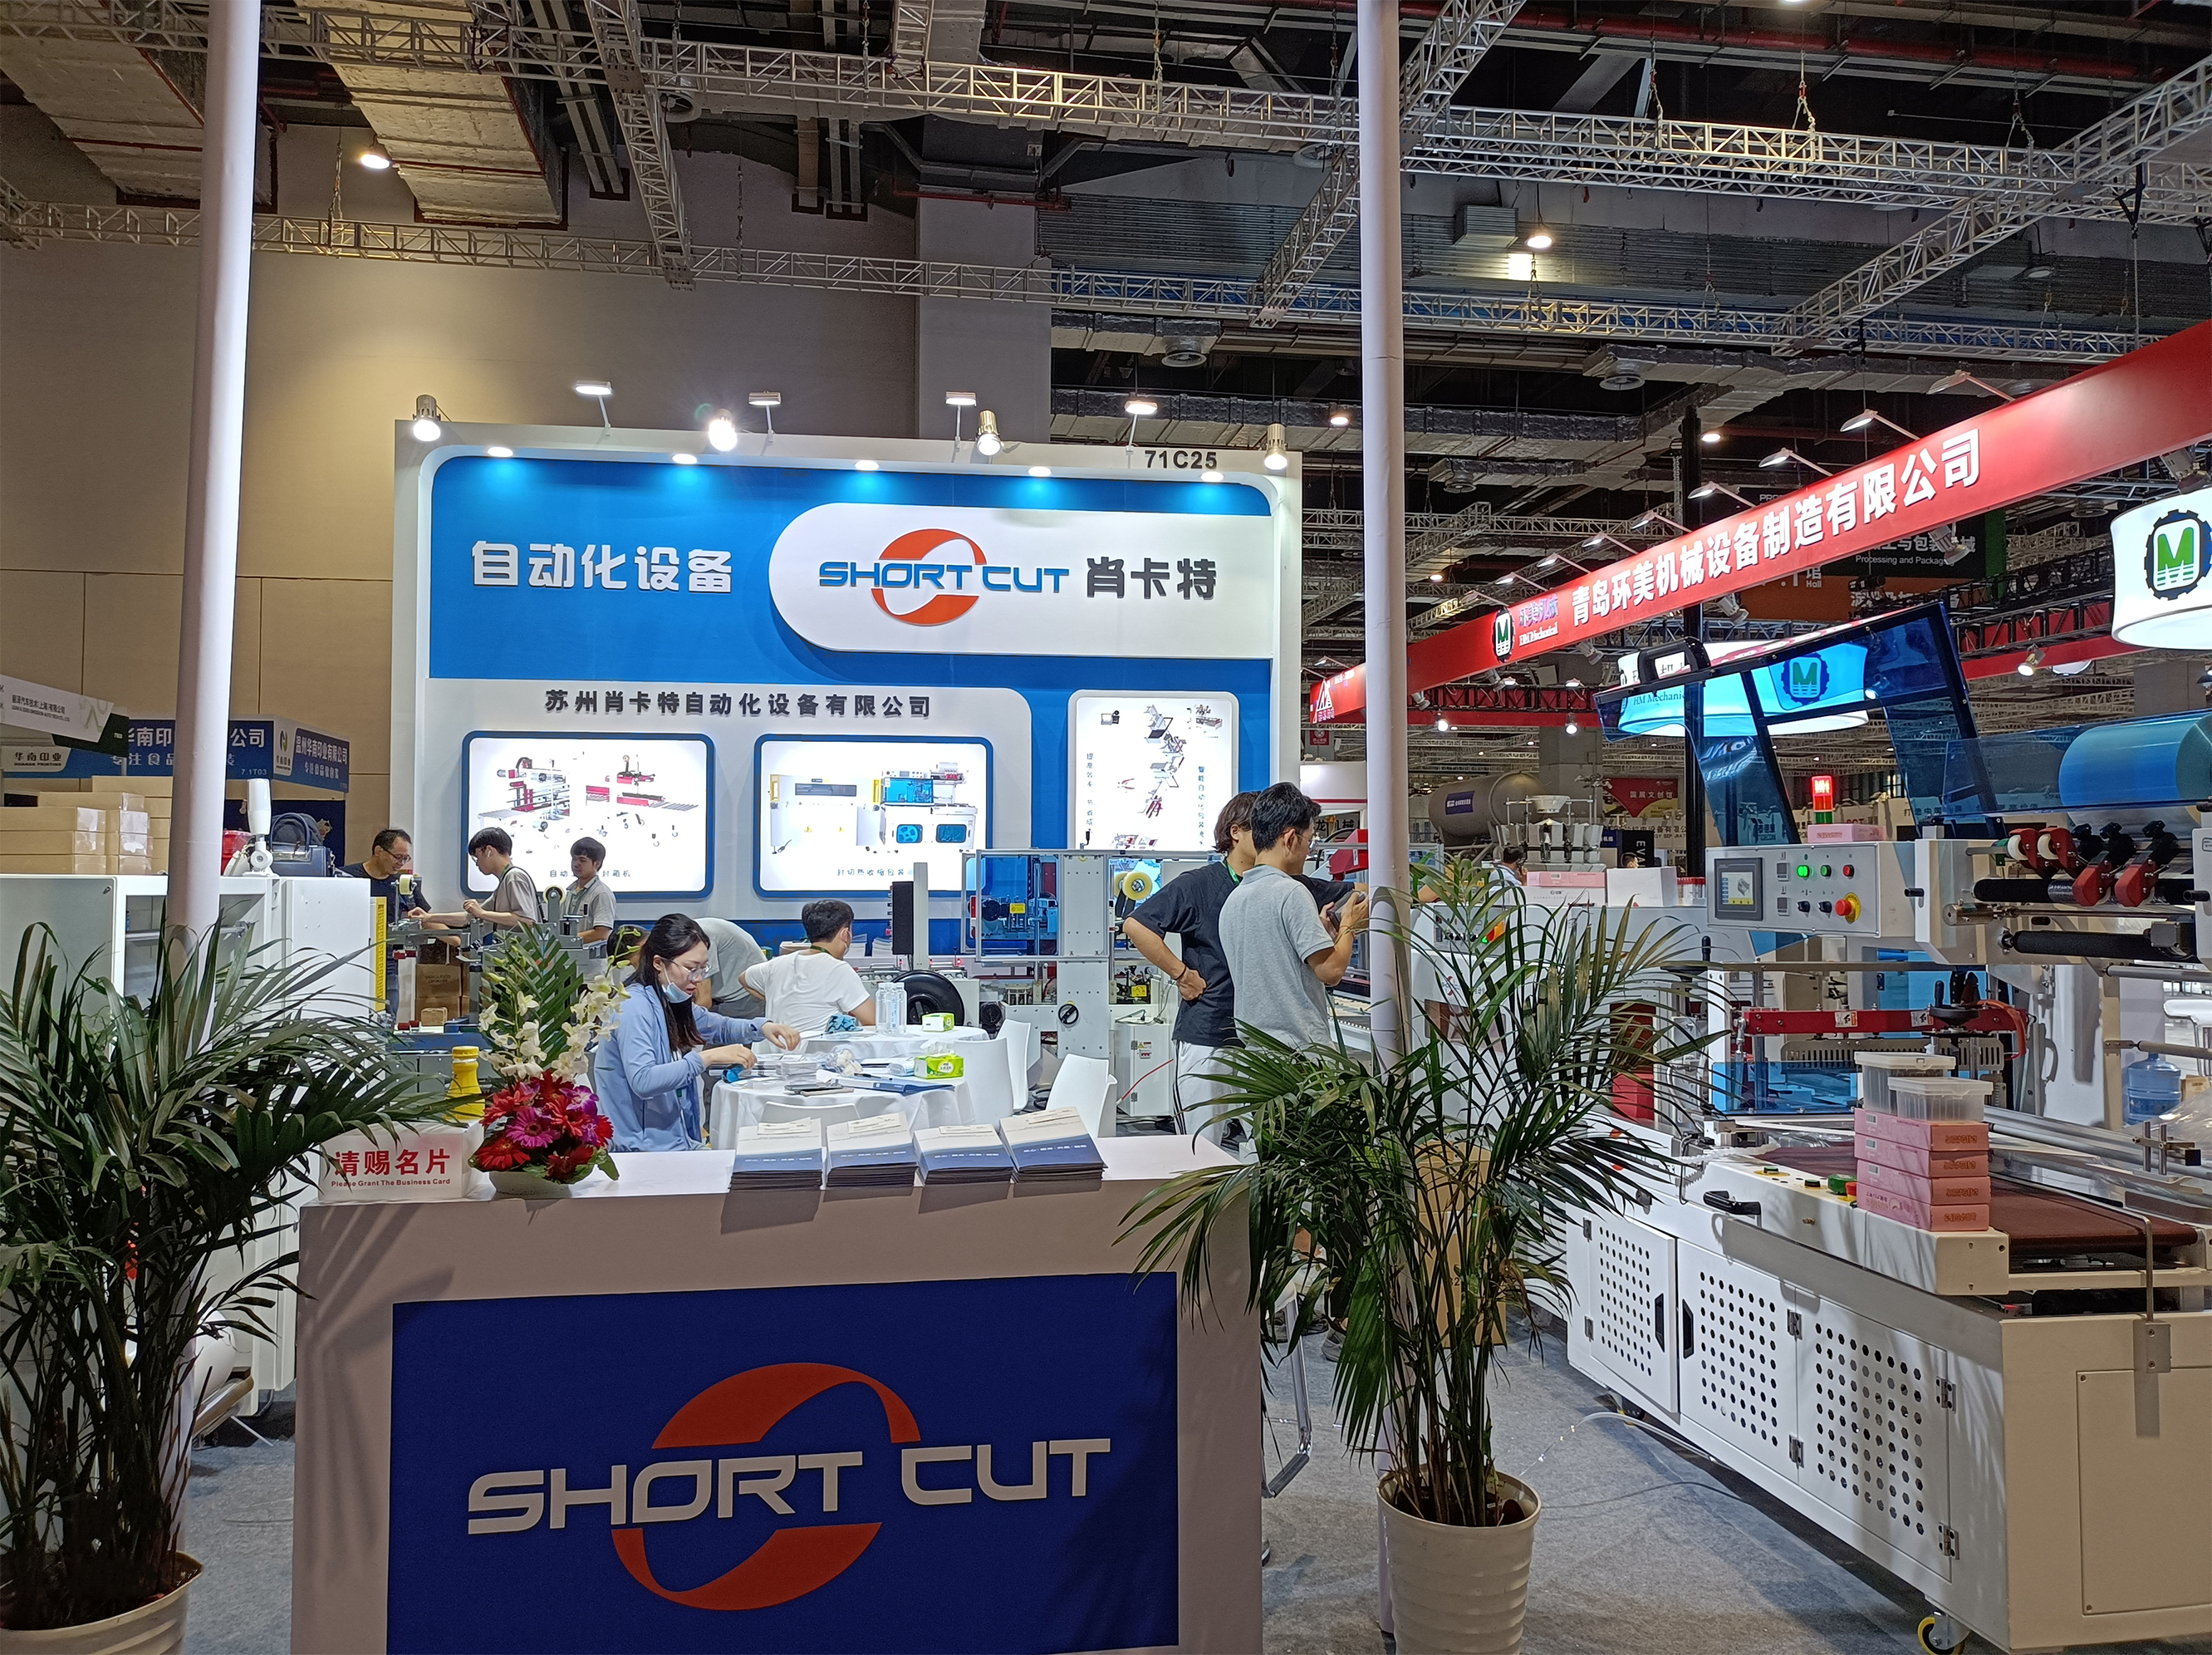 苏州明升体育自动化设备有限公司参加2020年上海包装机械展会